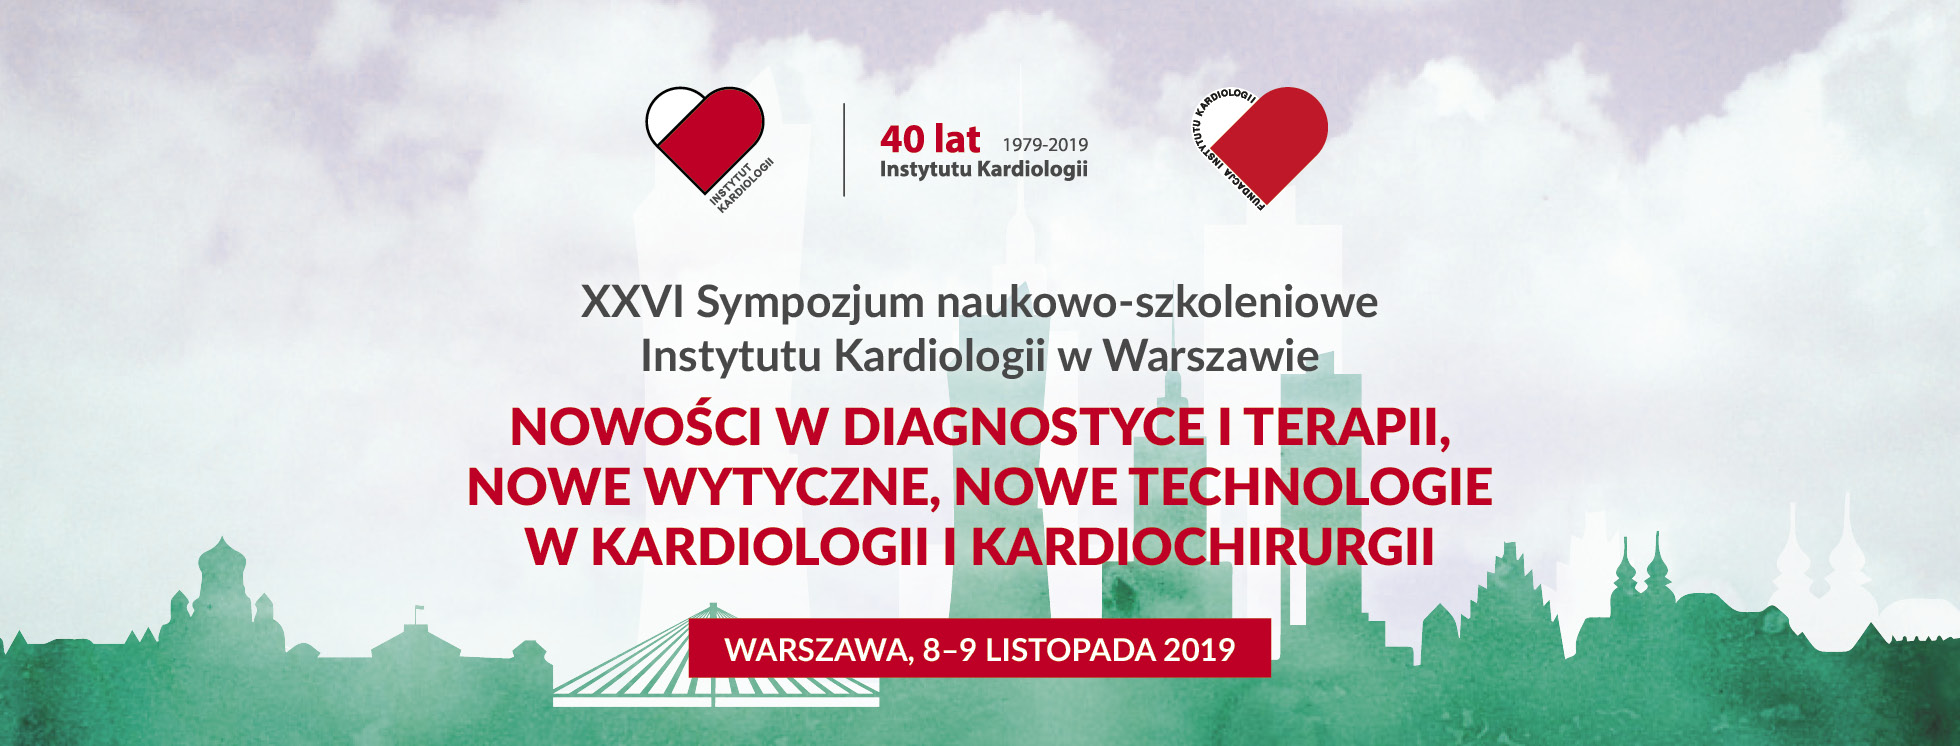 XXVI Sympozjum naukowo-szkoleniowe Instytutu Kardiologii w Warszawie